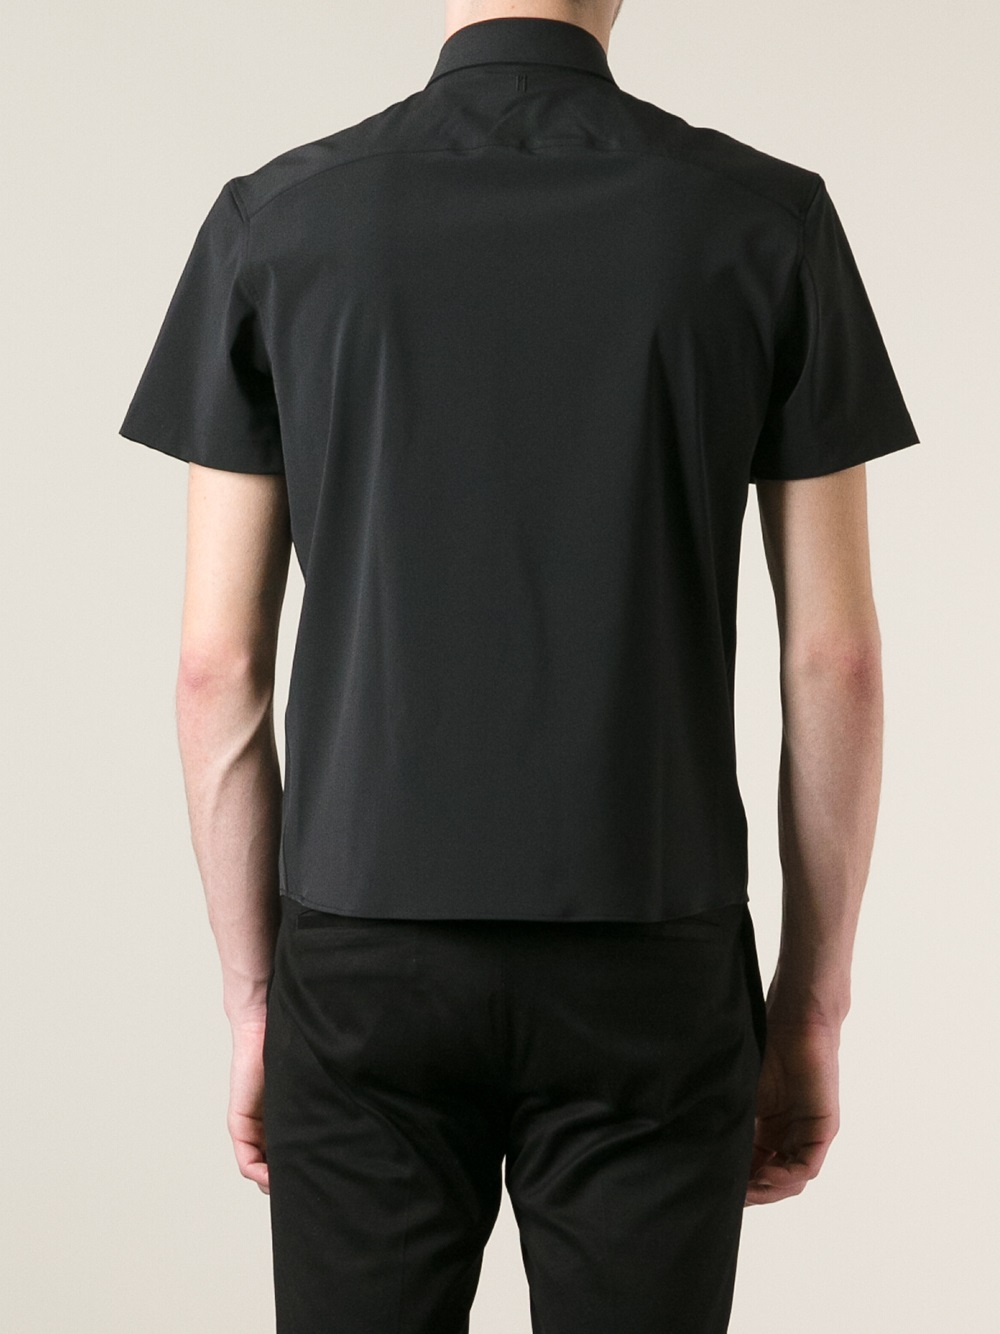 Lyst - Neil Barrett Short Sleeve Shirt in Black for Men